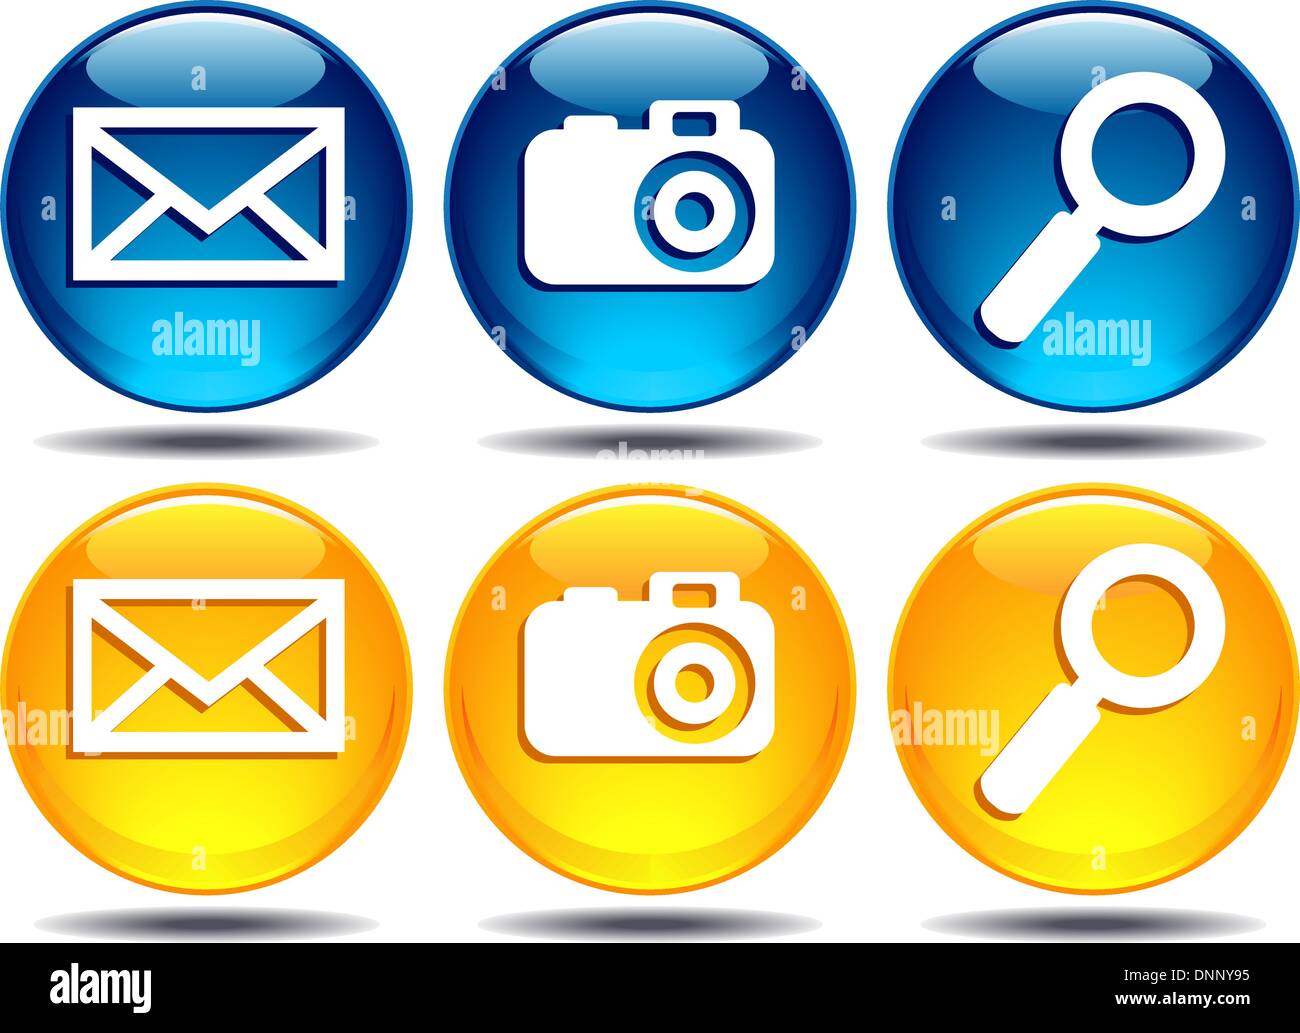 Busca ampliar la lupa Ampliar imagen de cámara foto fotografía digital envolvente digitalmente correo e-mail iconos botones Ilustración del Vector